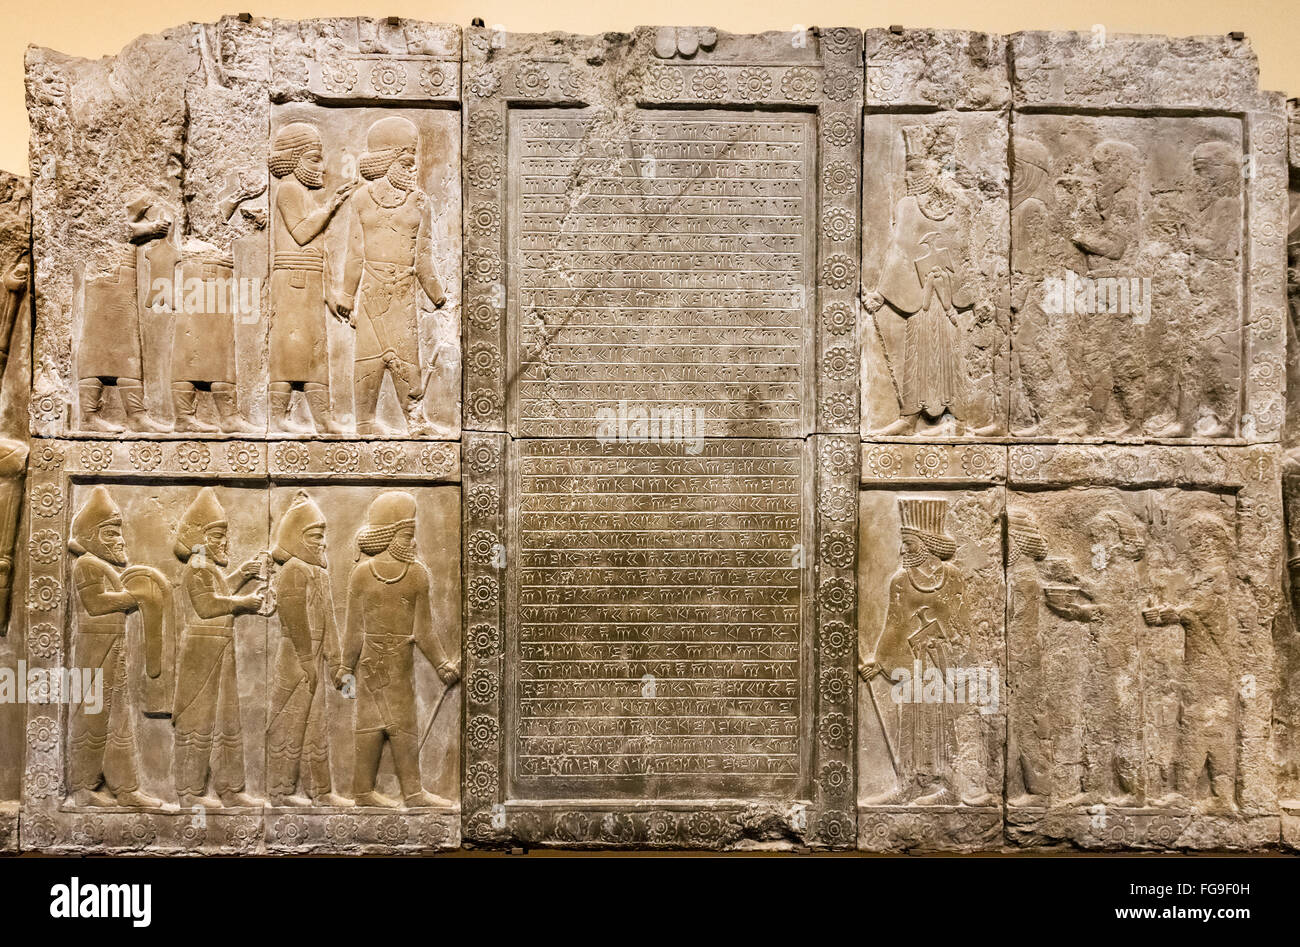 Plâtre de l'extérieur du palais de Darius à Persépolis (518-339 avant J.-C.), l'Empire achéménide. British Museum, Londres, Royaume-Uni Banque D'Images